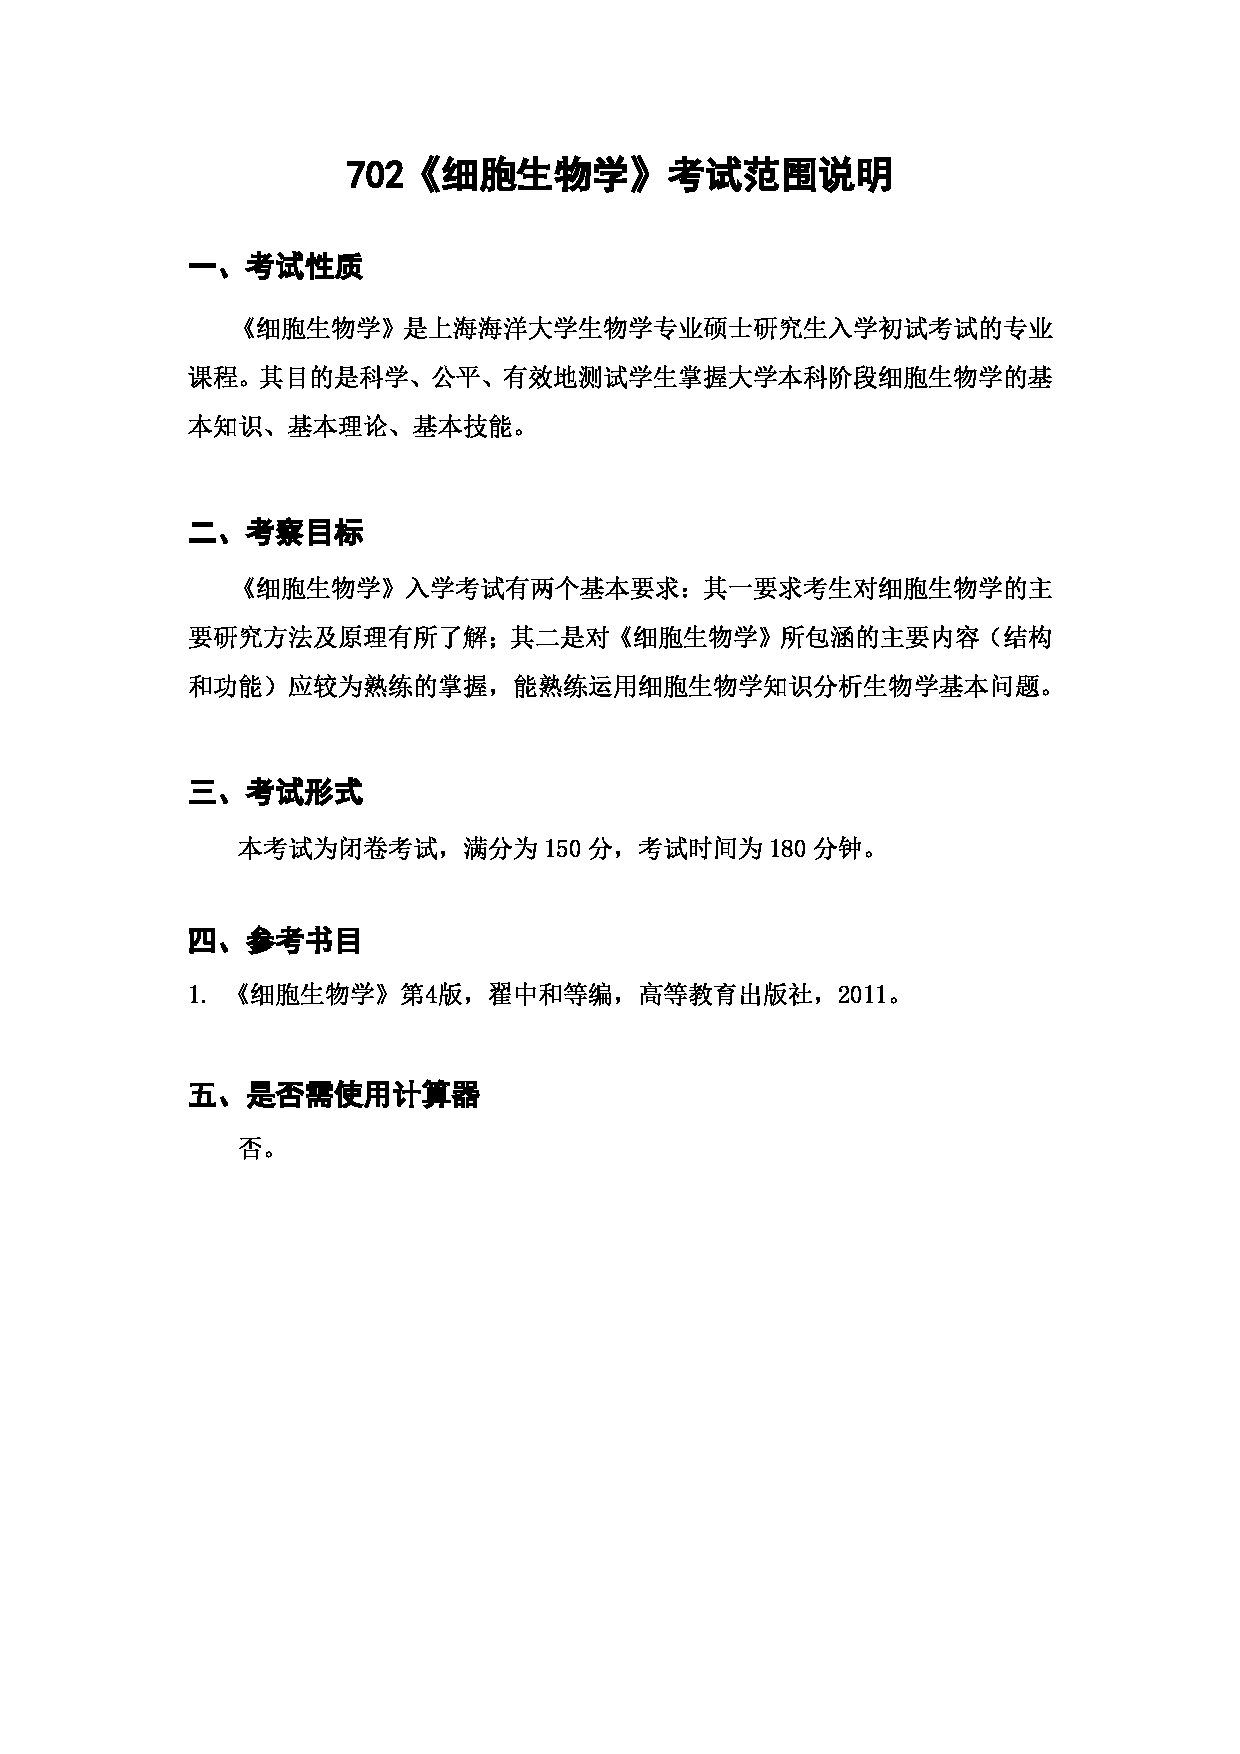 上海海洋大学2023年考研自命题科目 702《细胞生物学》 考试范围第1页